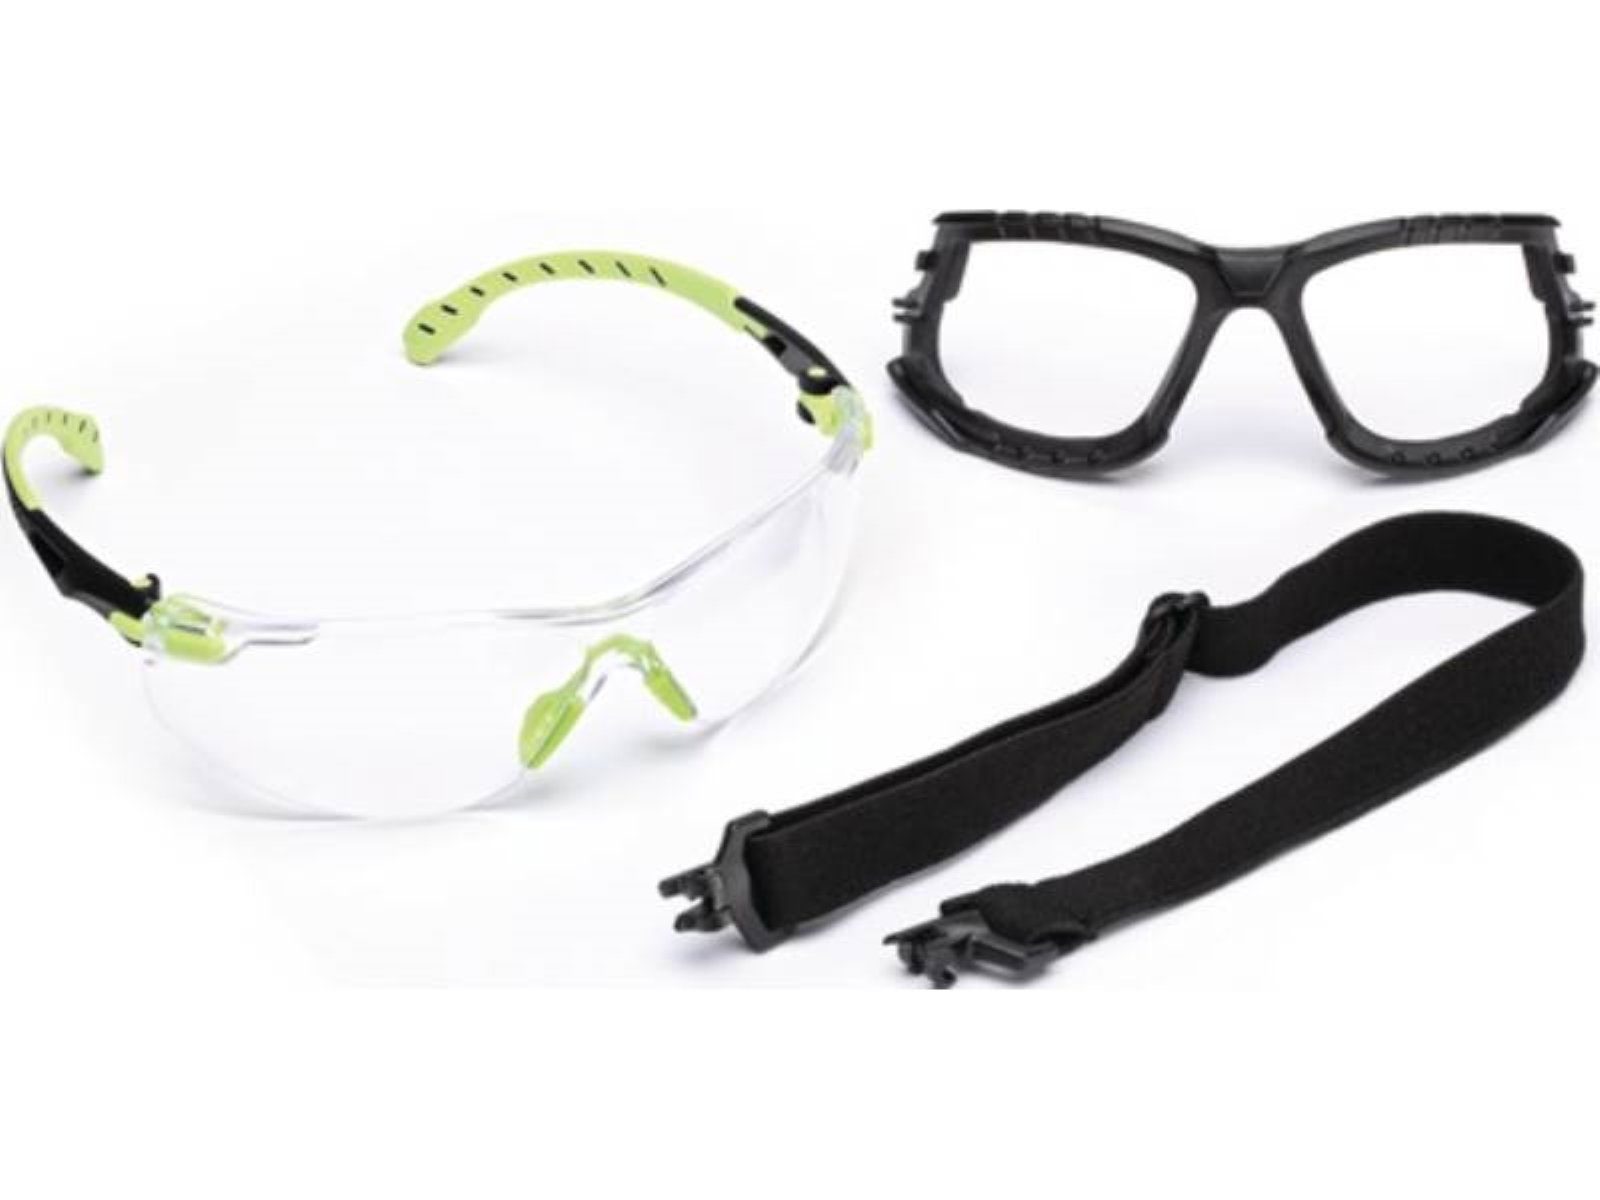 3M Arbeitsschutzbrille Schutzbrille Solus™ 1000-Set EN 166,EN 170,EN 172 Bügel grün,Schei